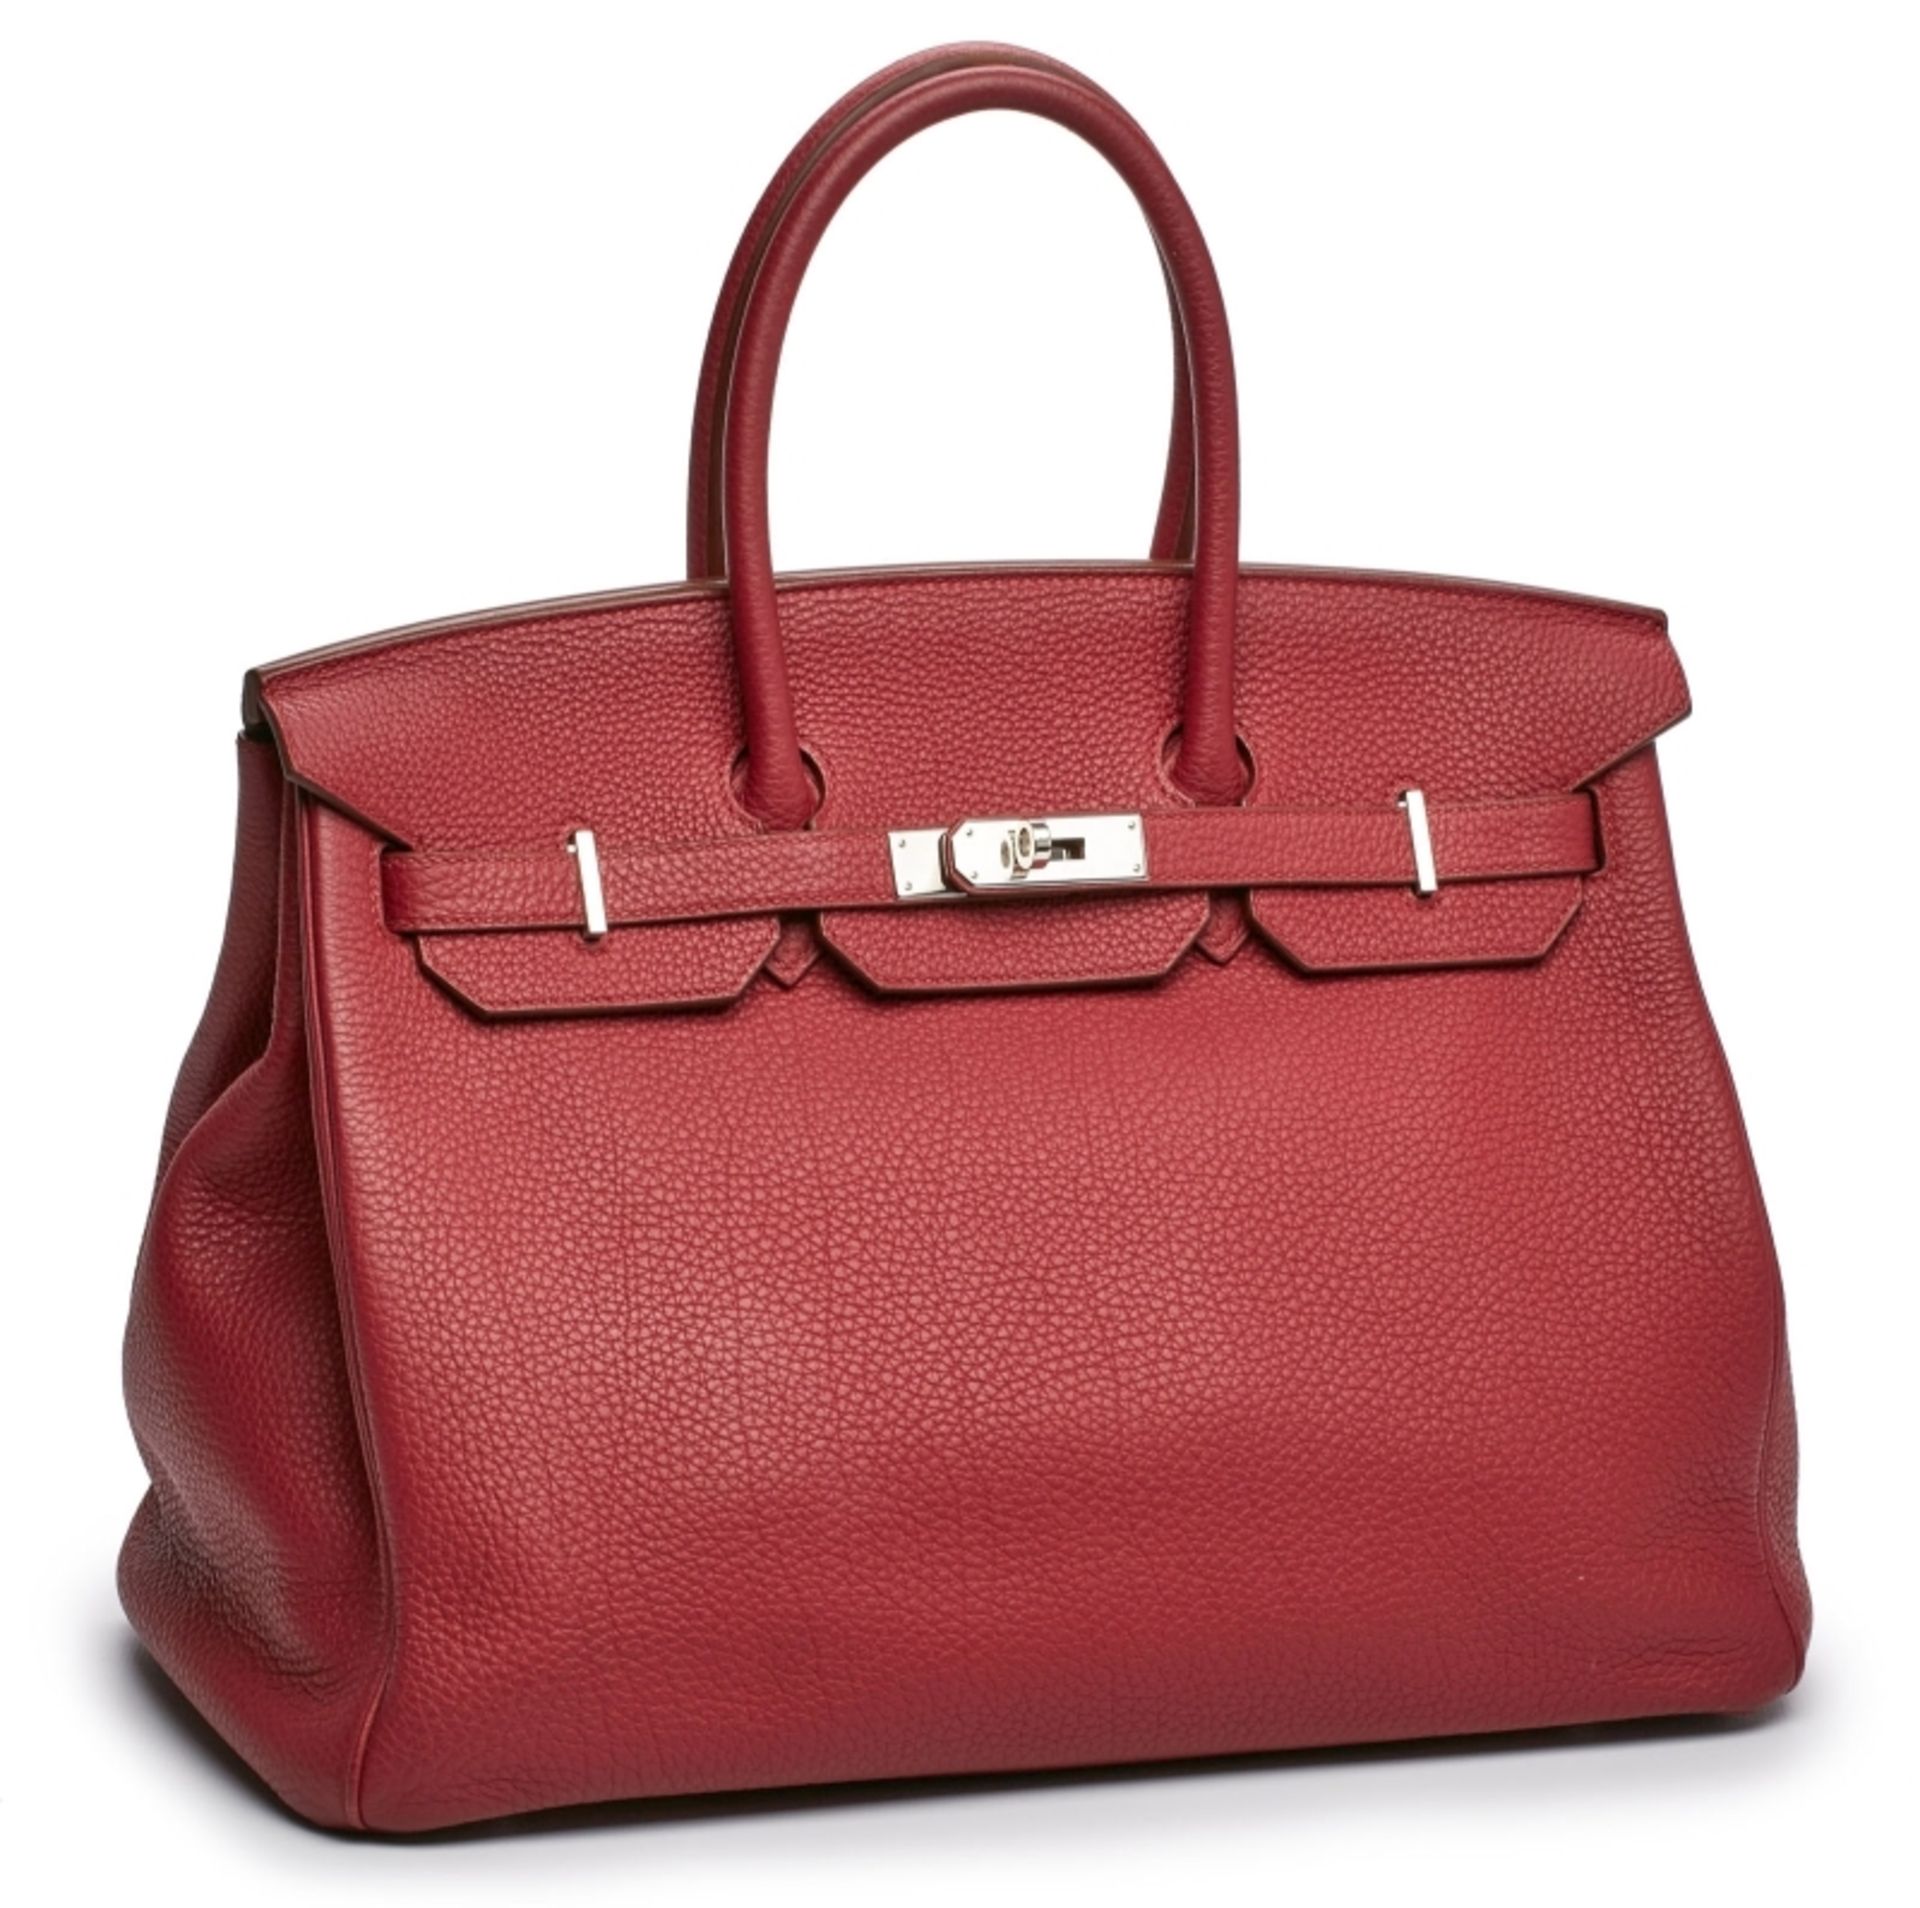 Handtasche "Birkin Bag", Hermès um 2014.